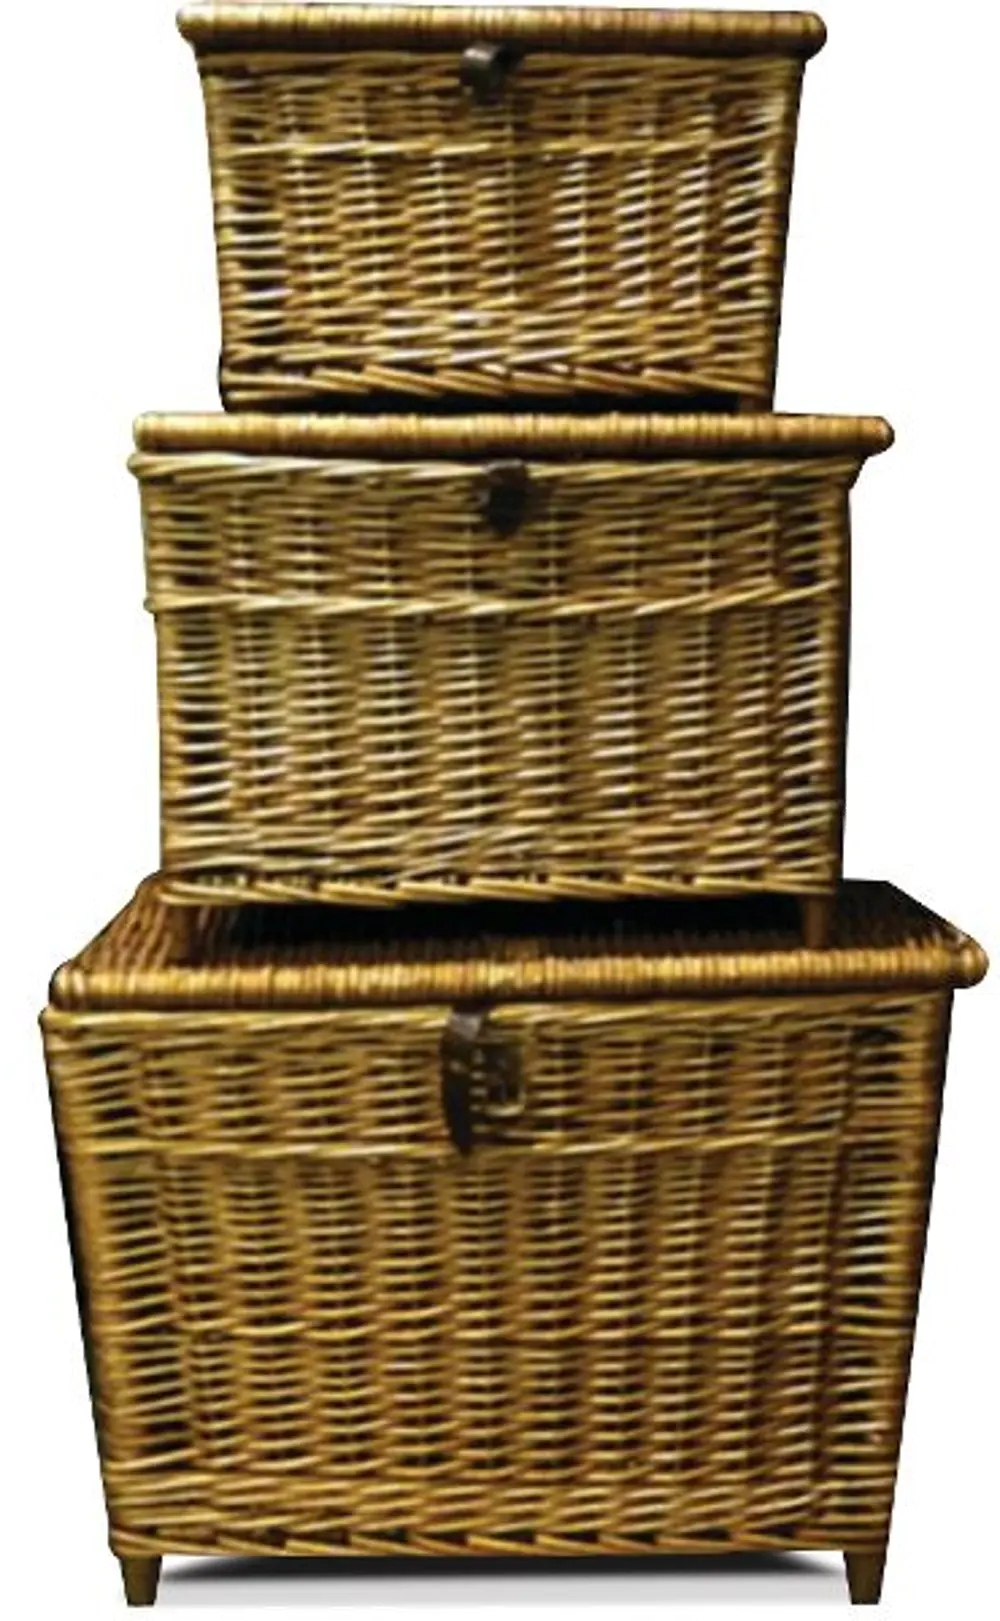 Small Woven Wicker Lidded Fishing Basket-1